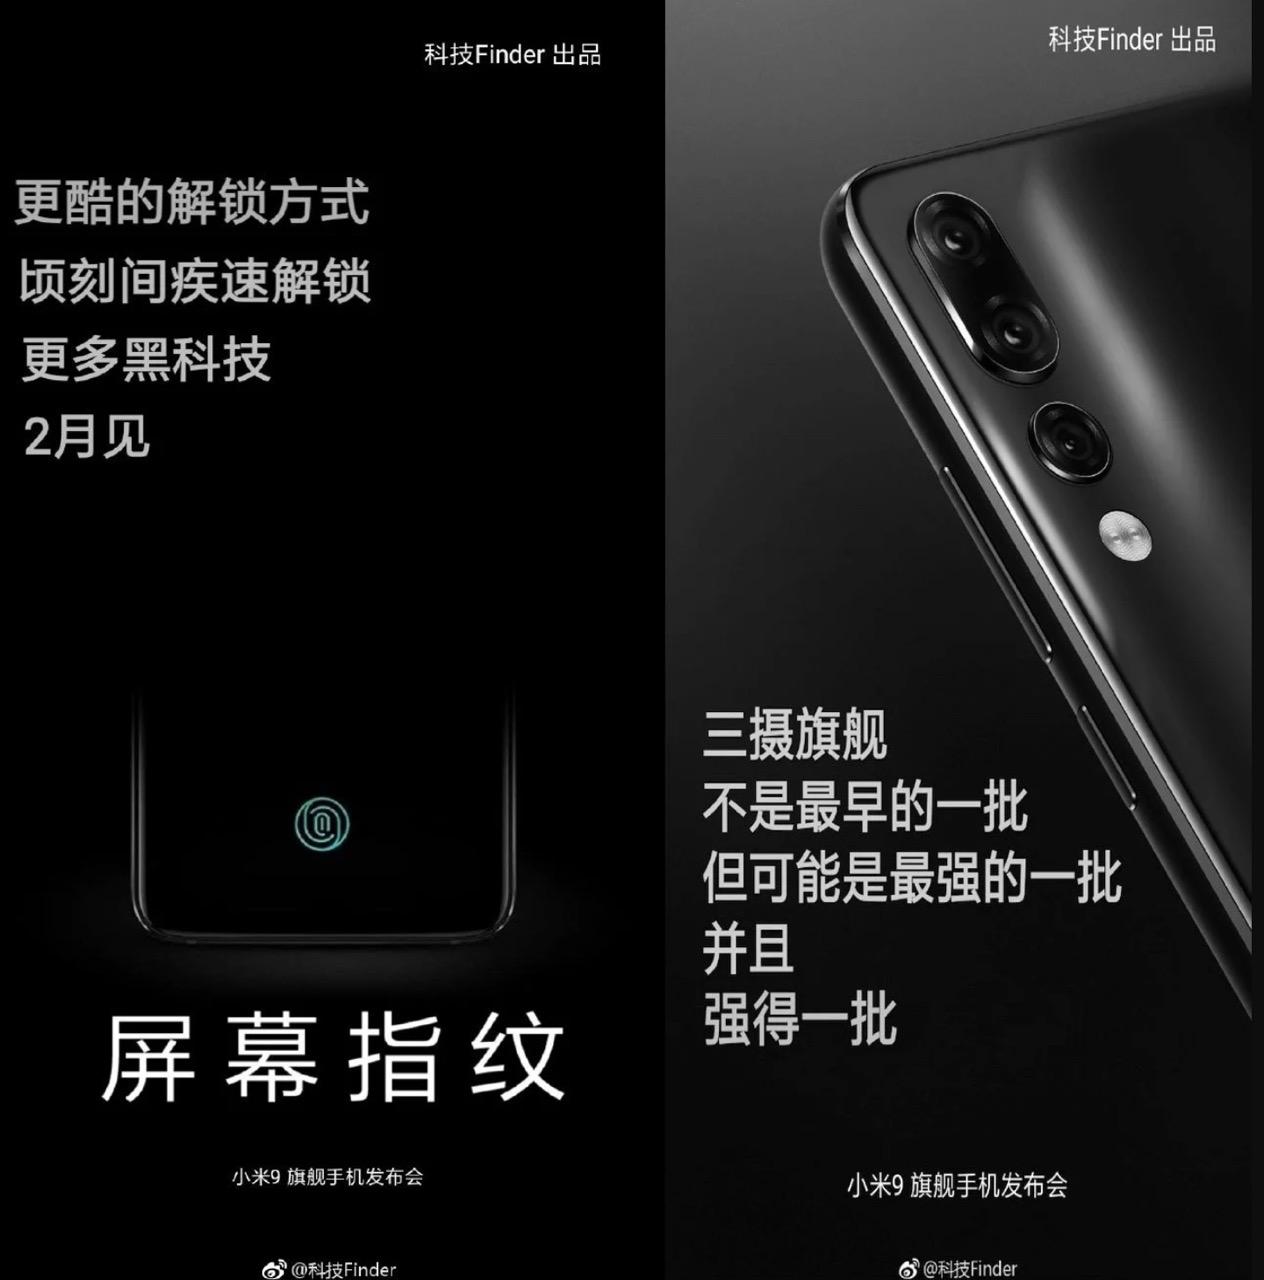 Xiaomi có thể mang Mi 9 trong tháng hai 2"width =" 1264 "height =" 1280